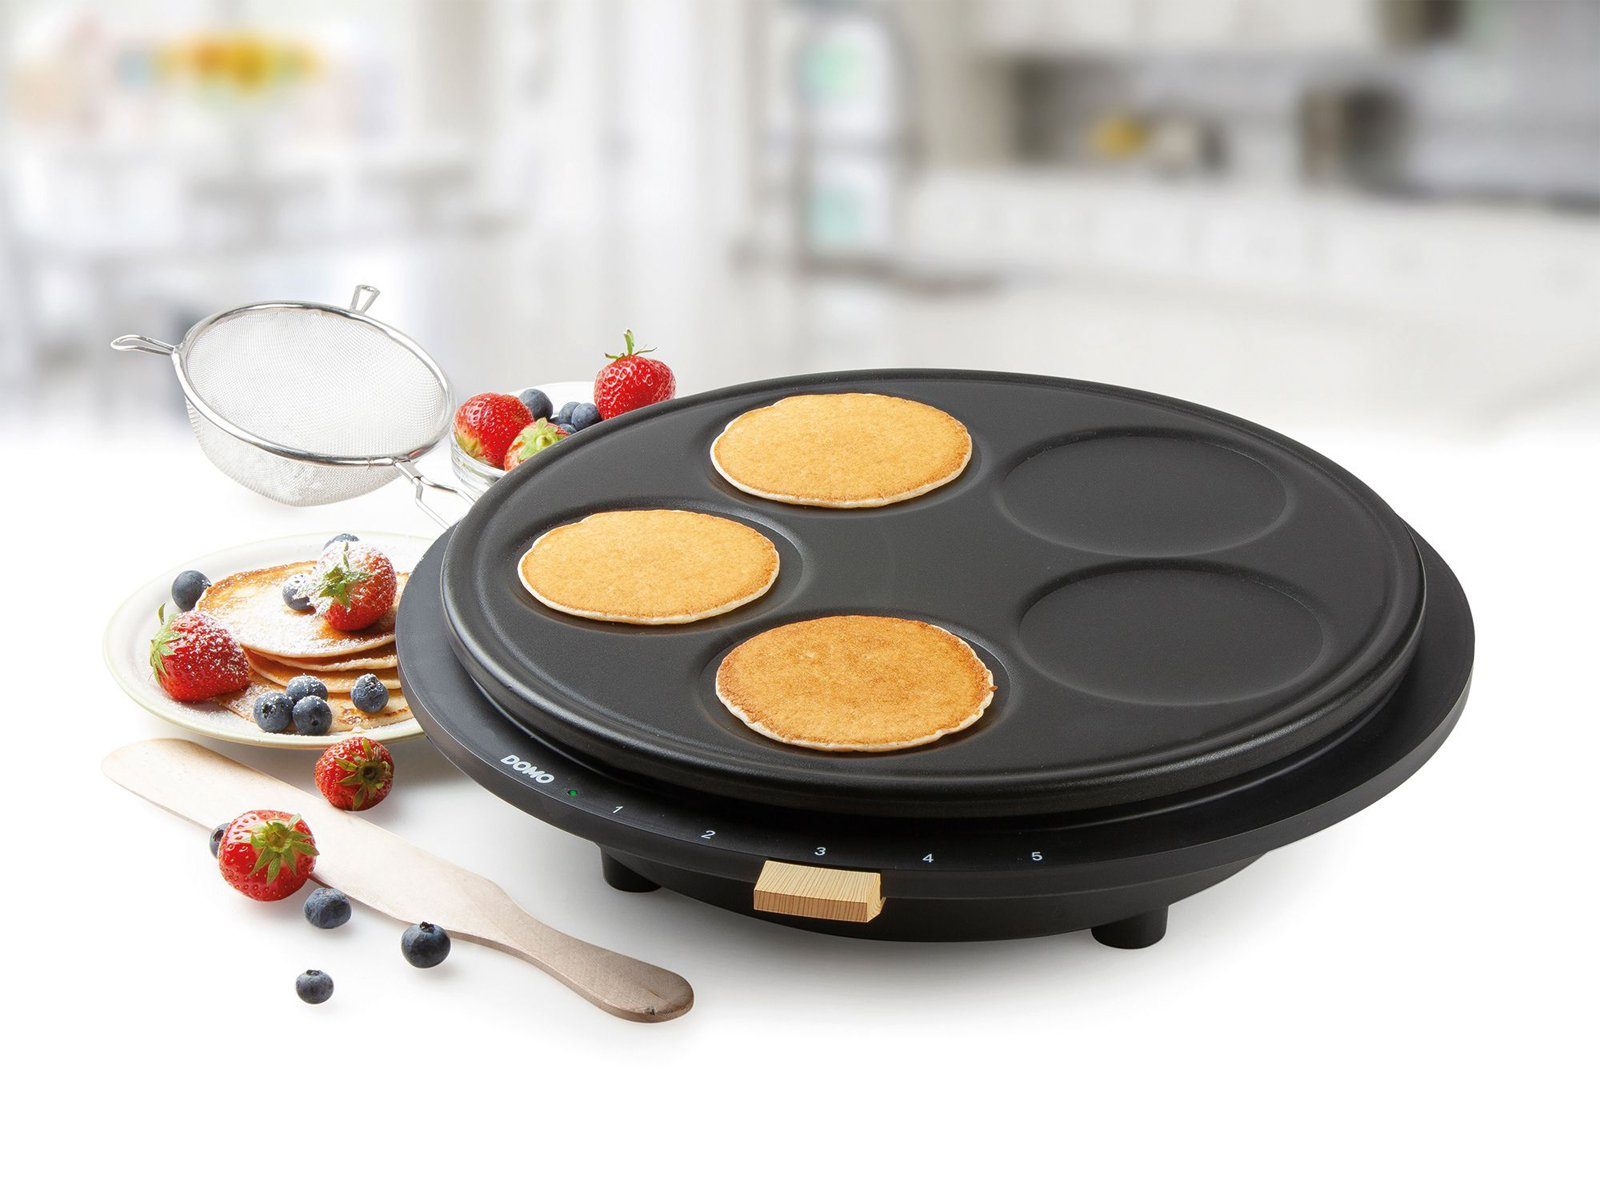 Domo Crêpesmaker, 1500 W, Ø 38 cm, 1 Pancake groß, 5 süße Pfannkuchen  selber machen Crepes-Eisen Creperie, Pancake maker mit Antihaftbeschichtung  für leichte Reinigung